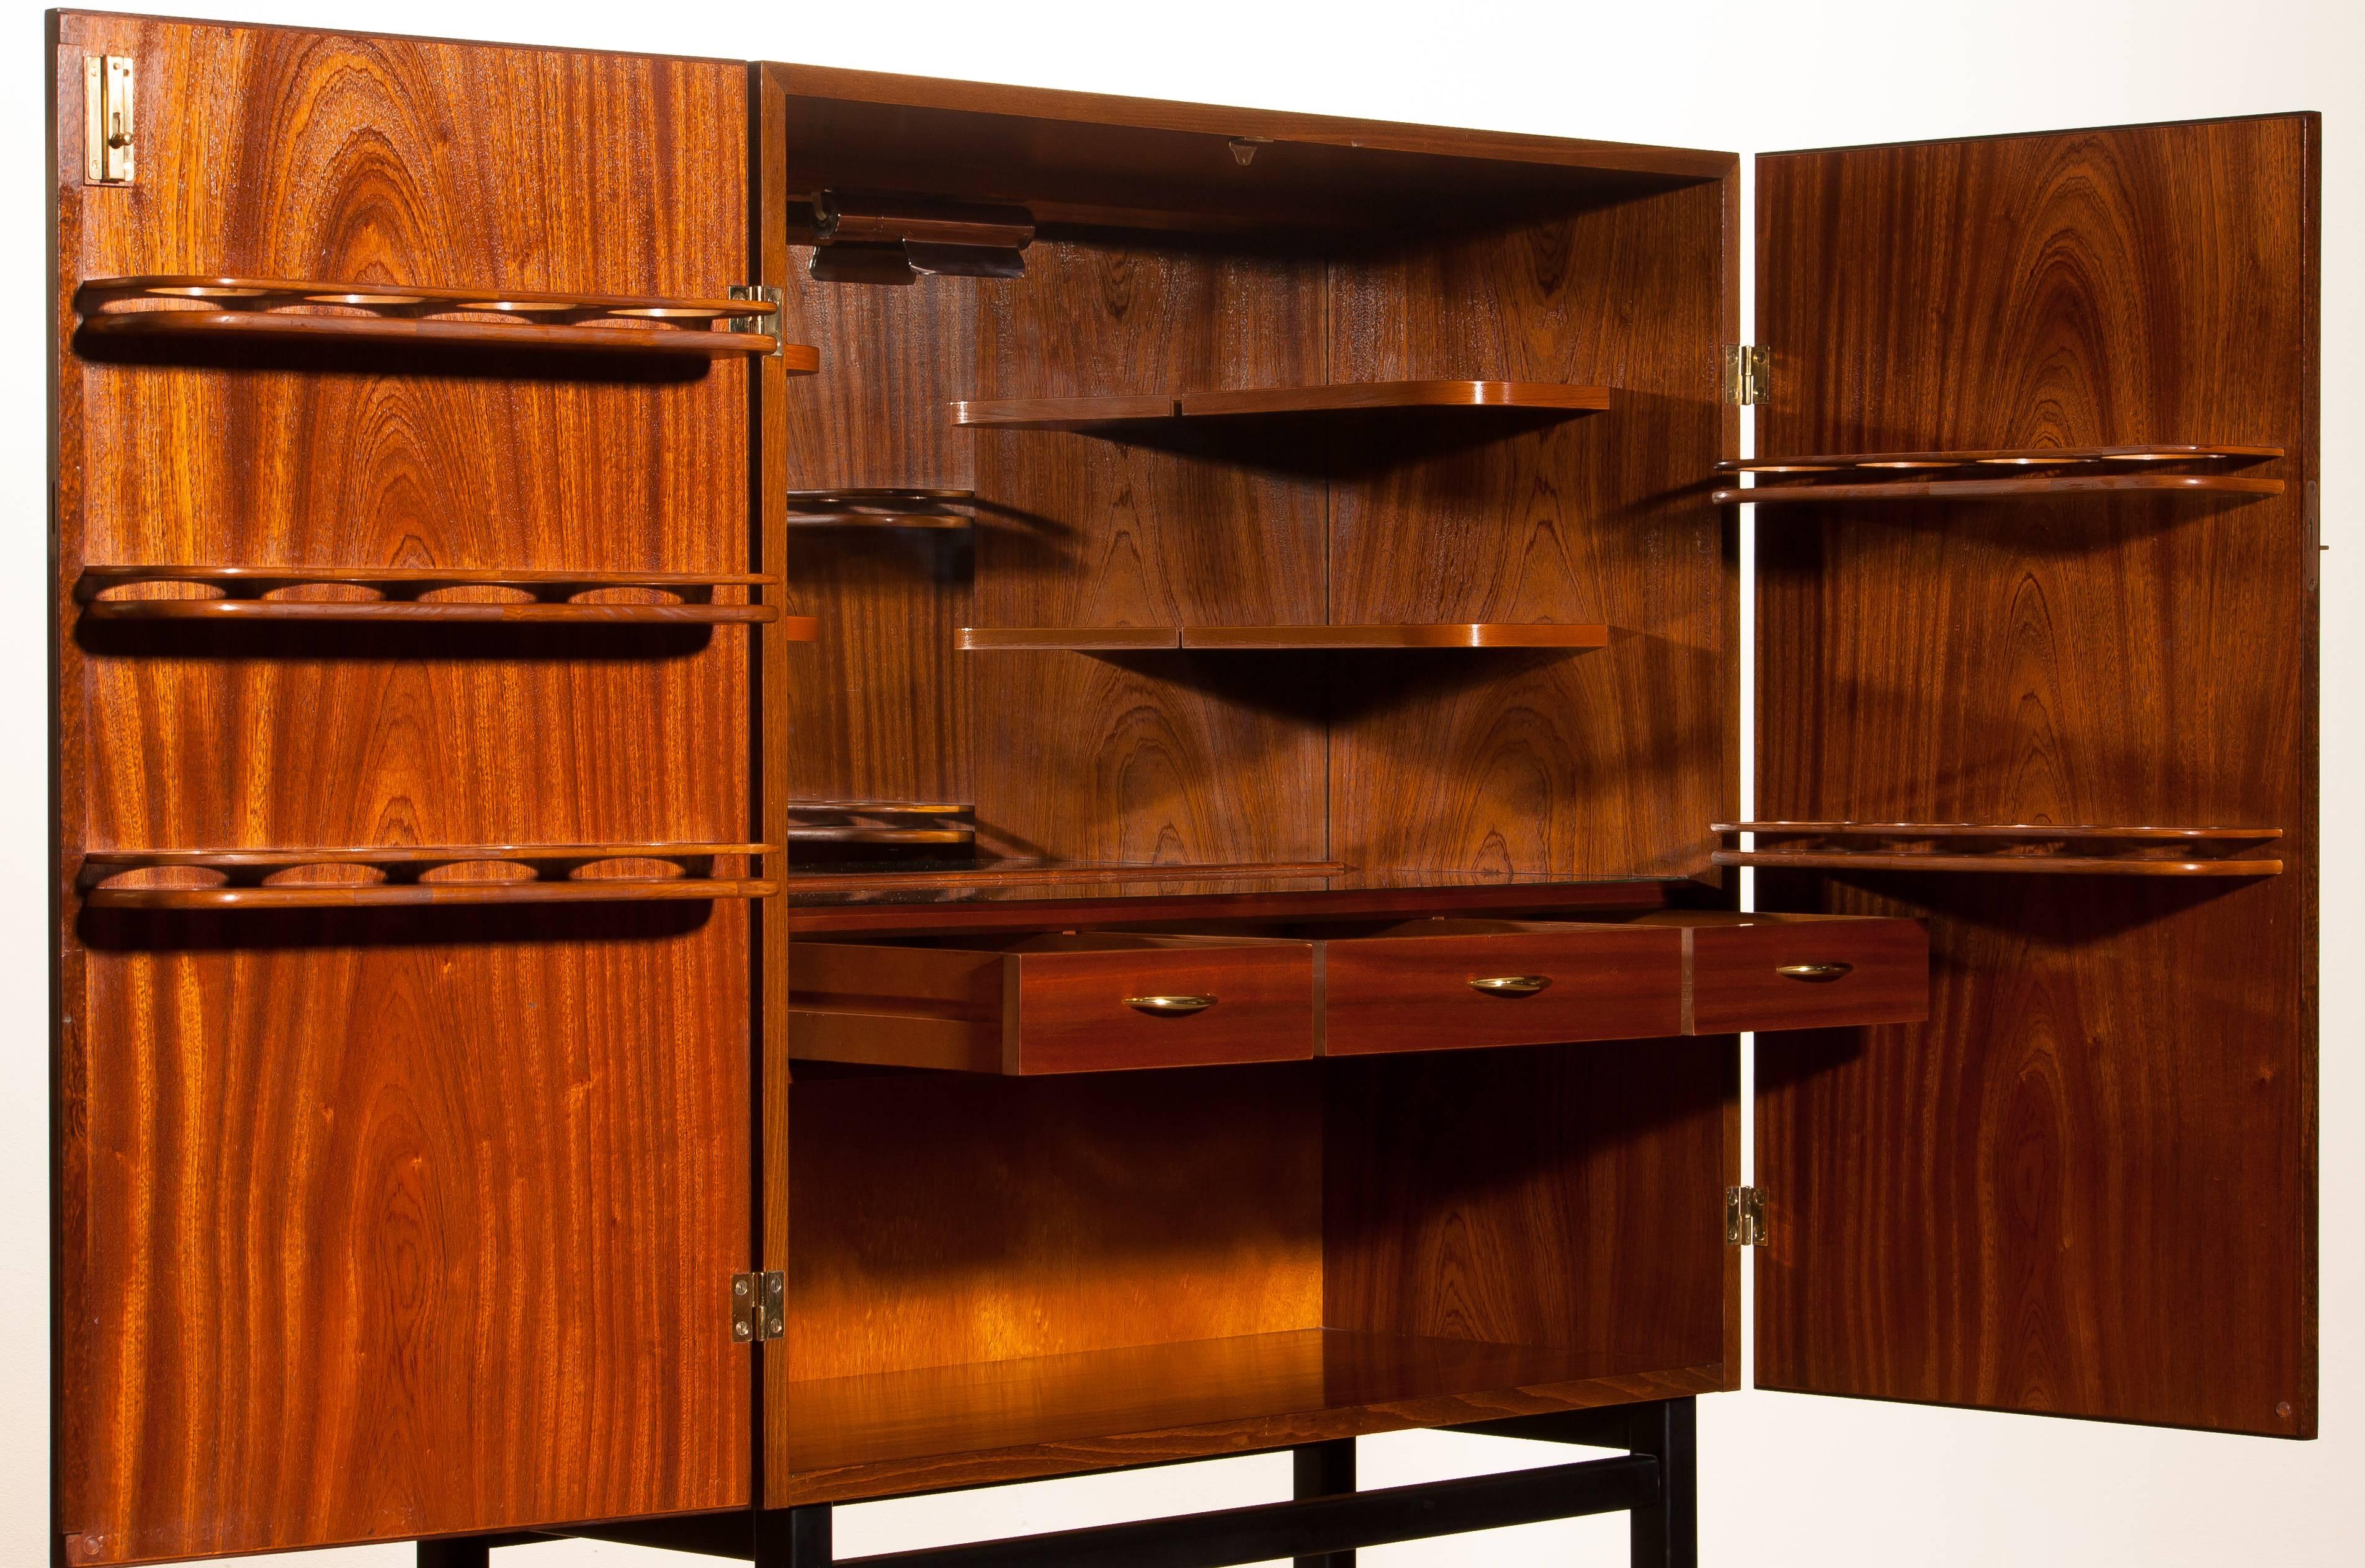 Mahogany Dry Bar Cabinet, Brass Details, High Black Skinny Legs Made by Förenade 4